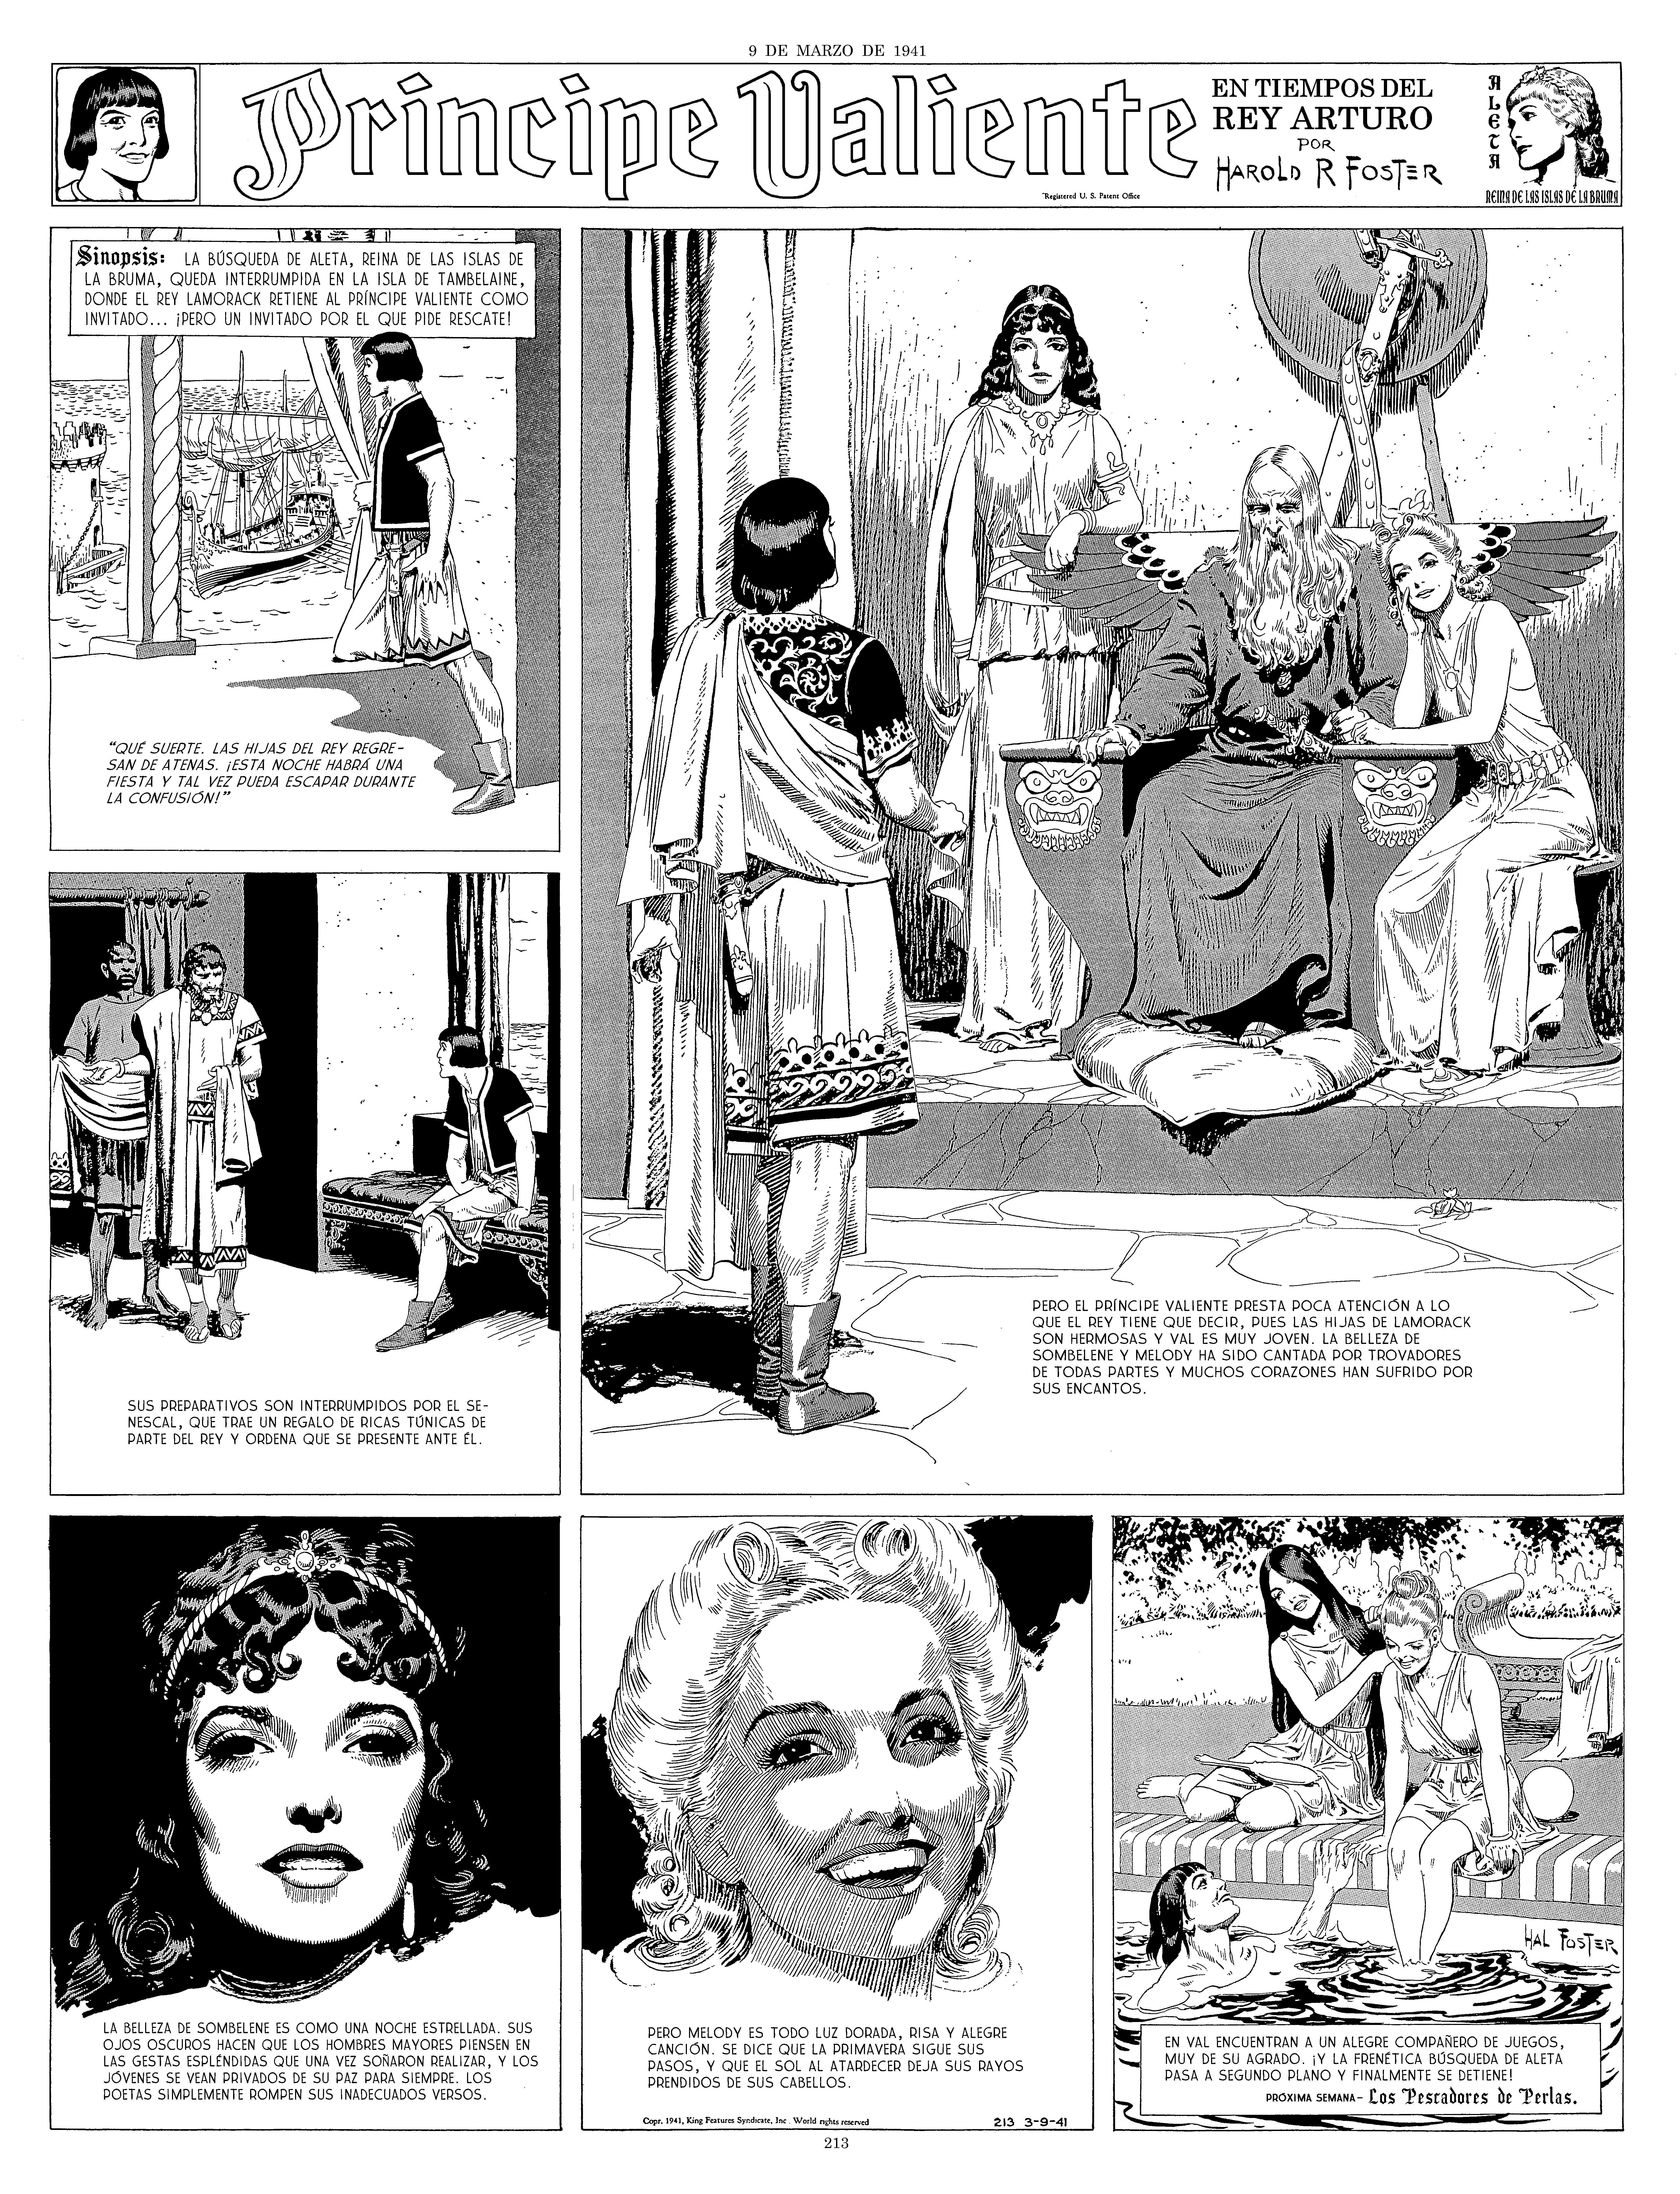 Un ejemplo de las páginas de Príncipe Valiente, en la edición de Manuel Caldas